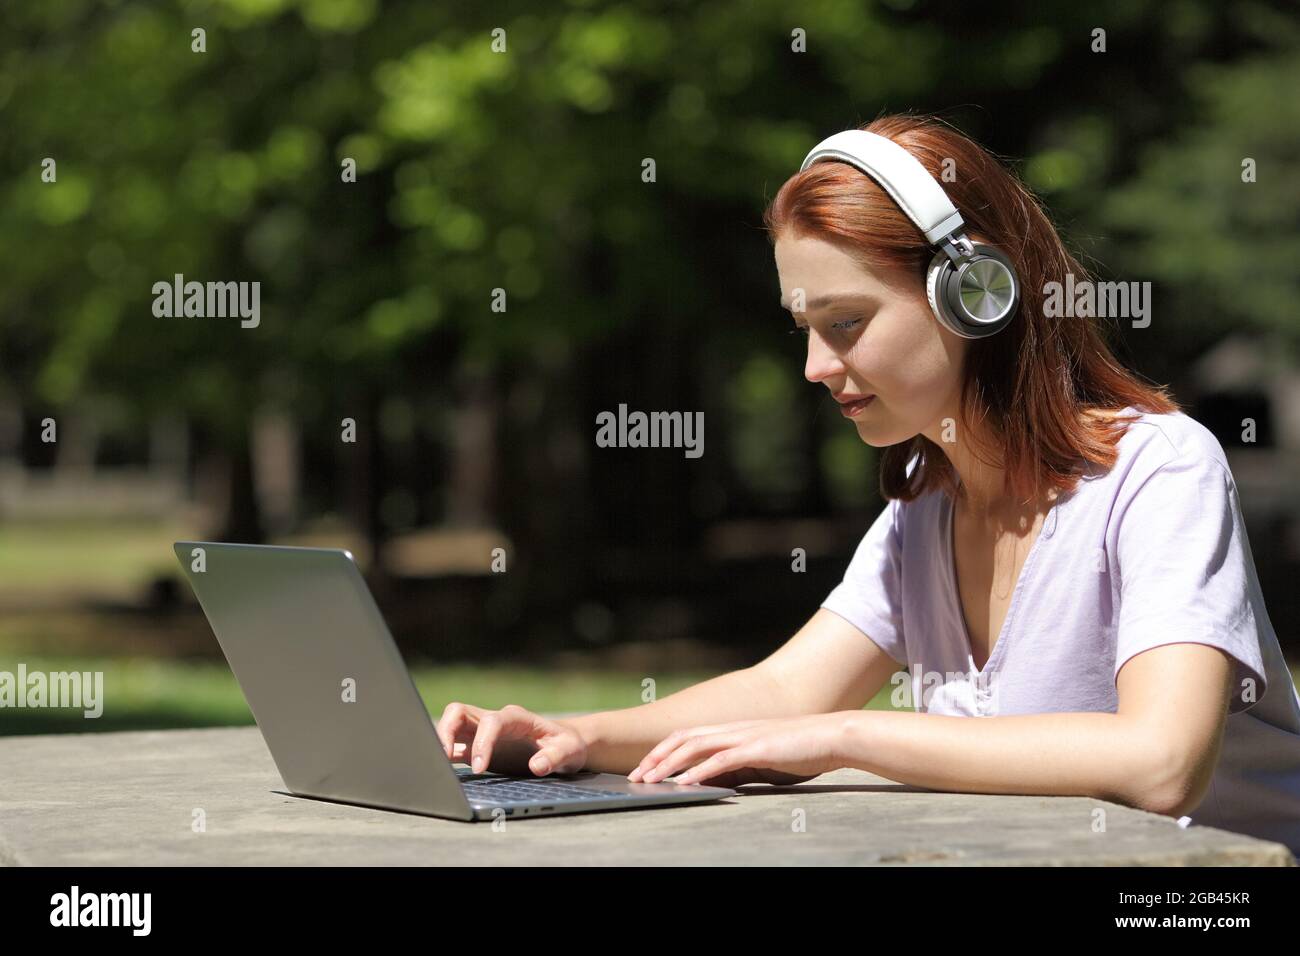 Profil einer Frau mit kabellosen Kopfhörern, die ihren Laptop in einem Park überprüft Stockfoto